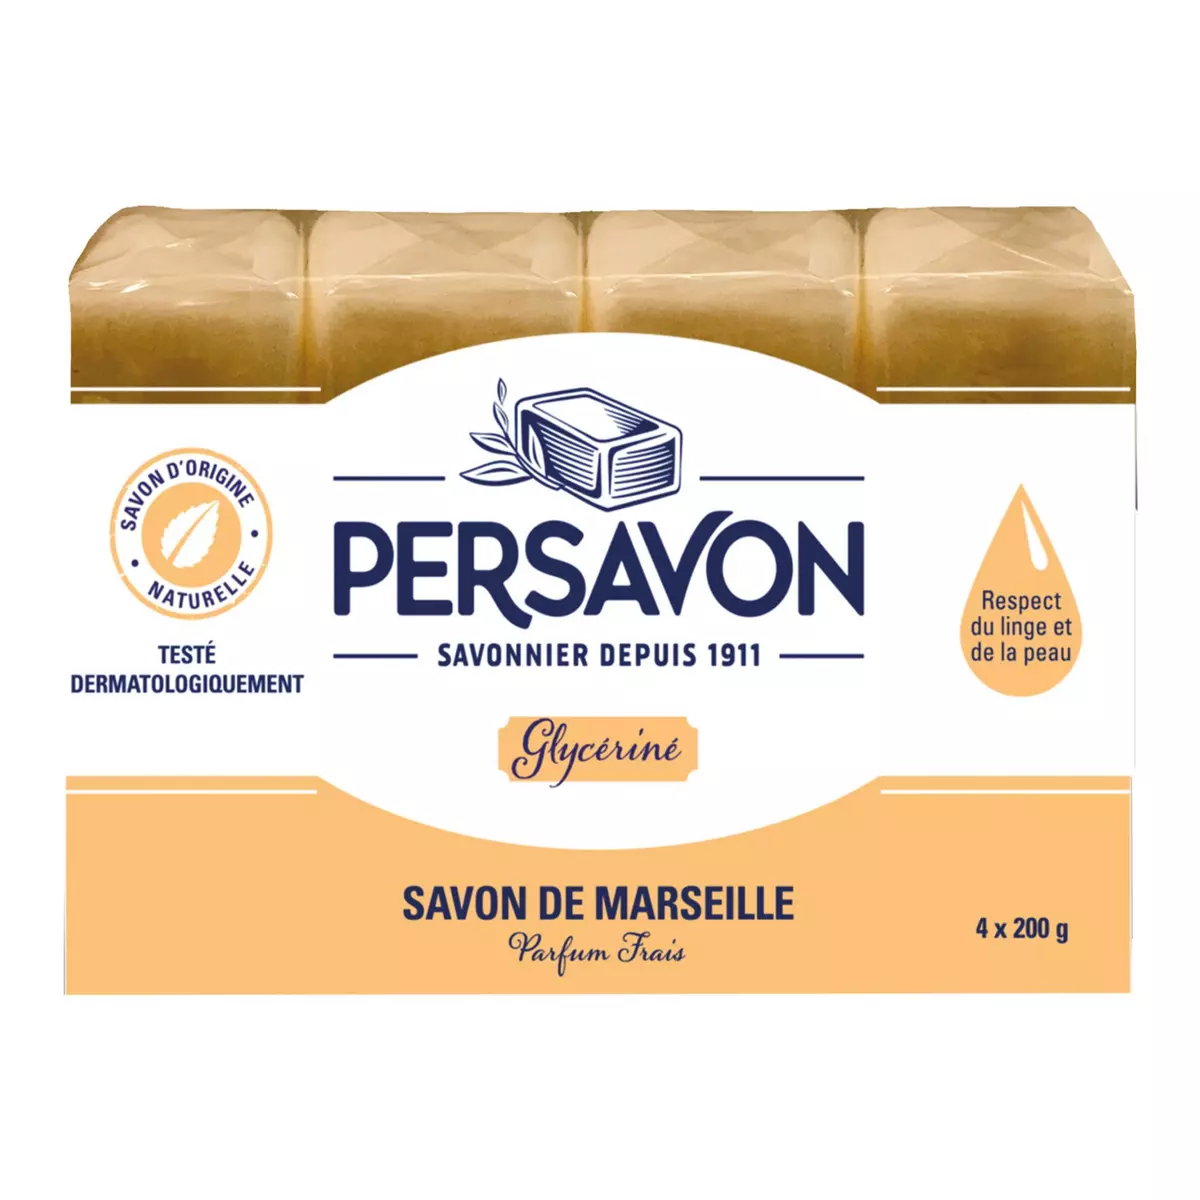 PERSAVON Savon de Marseille glyc 4 savons 4x200g